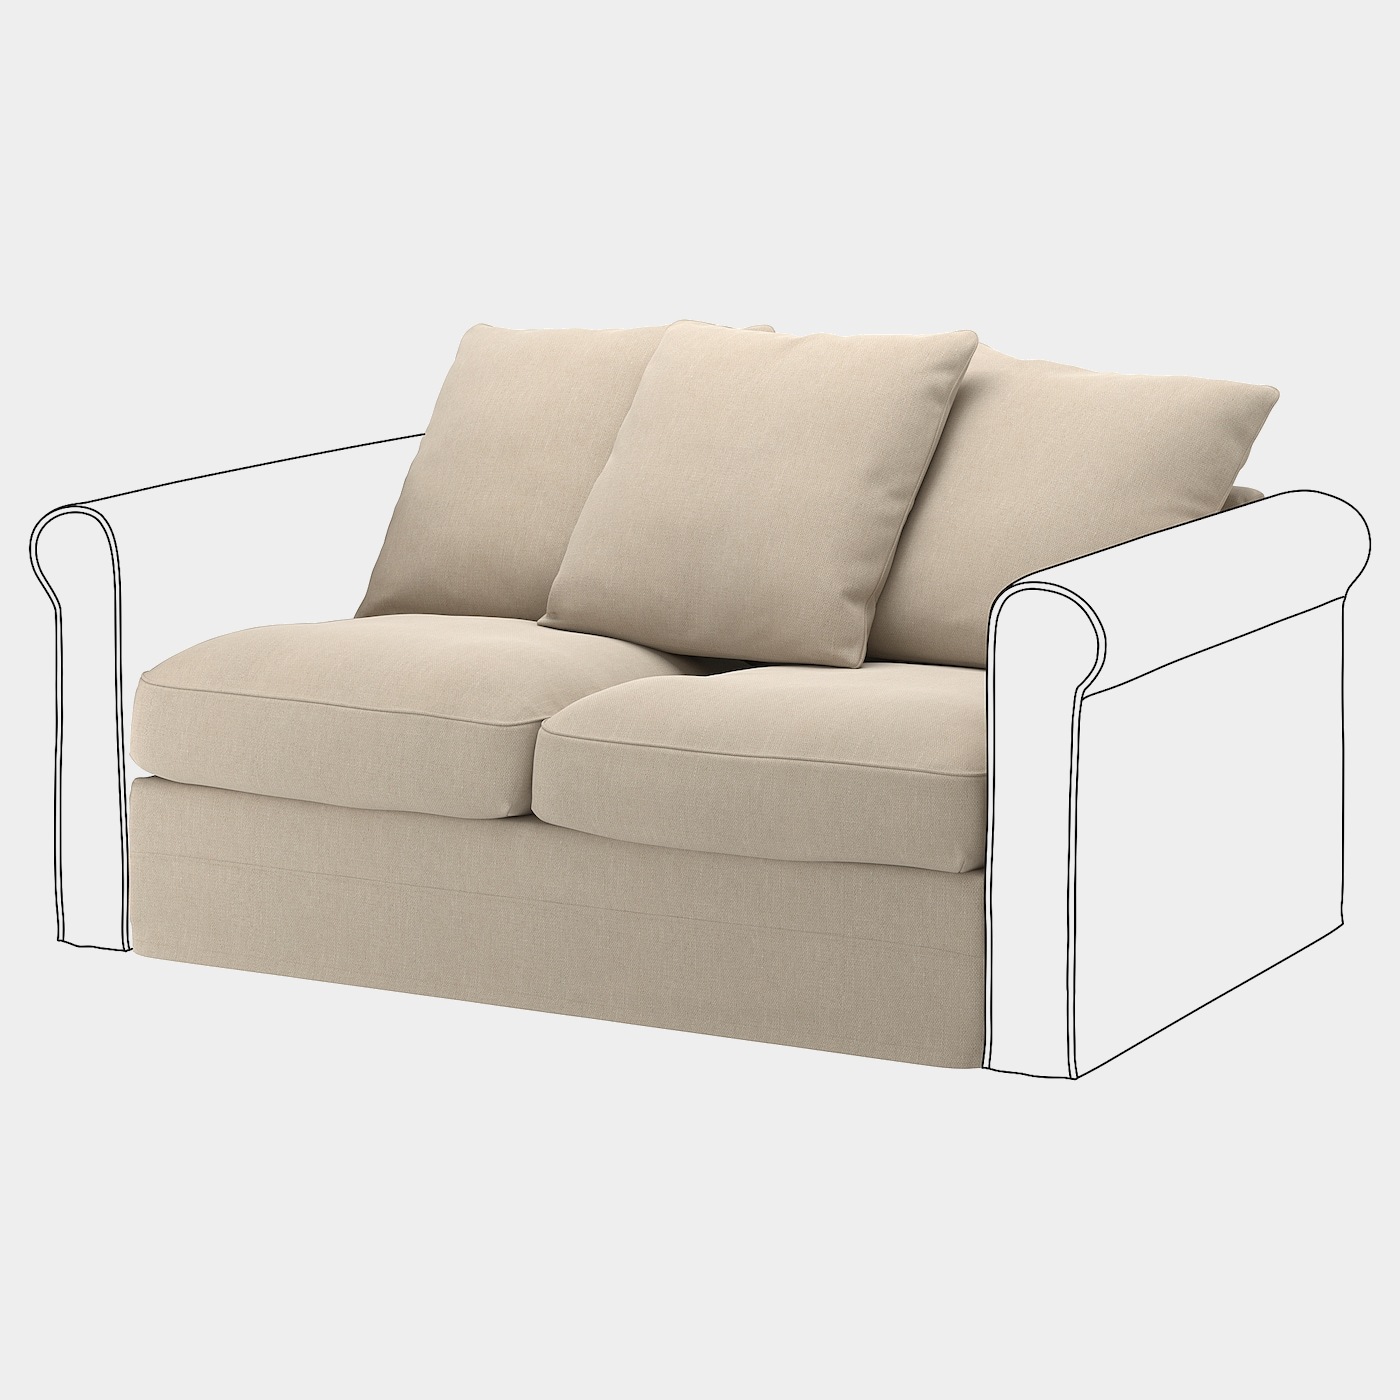 GRÖNLID Bezug Sitzelement 2  - extra Bezüge - Möbel Ideen für dein Zuhause von Home Trends. Möbel Trends von Social Media Influencer für dein Skandi Zuhause.